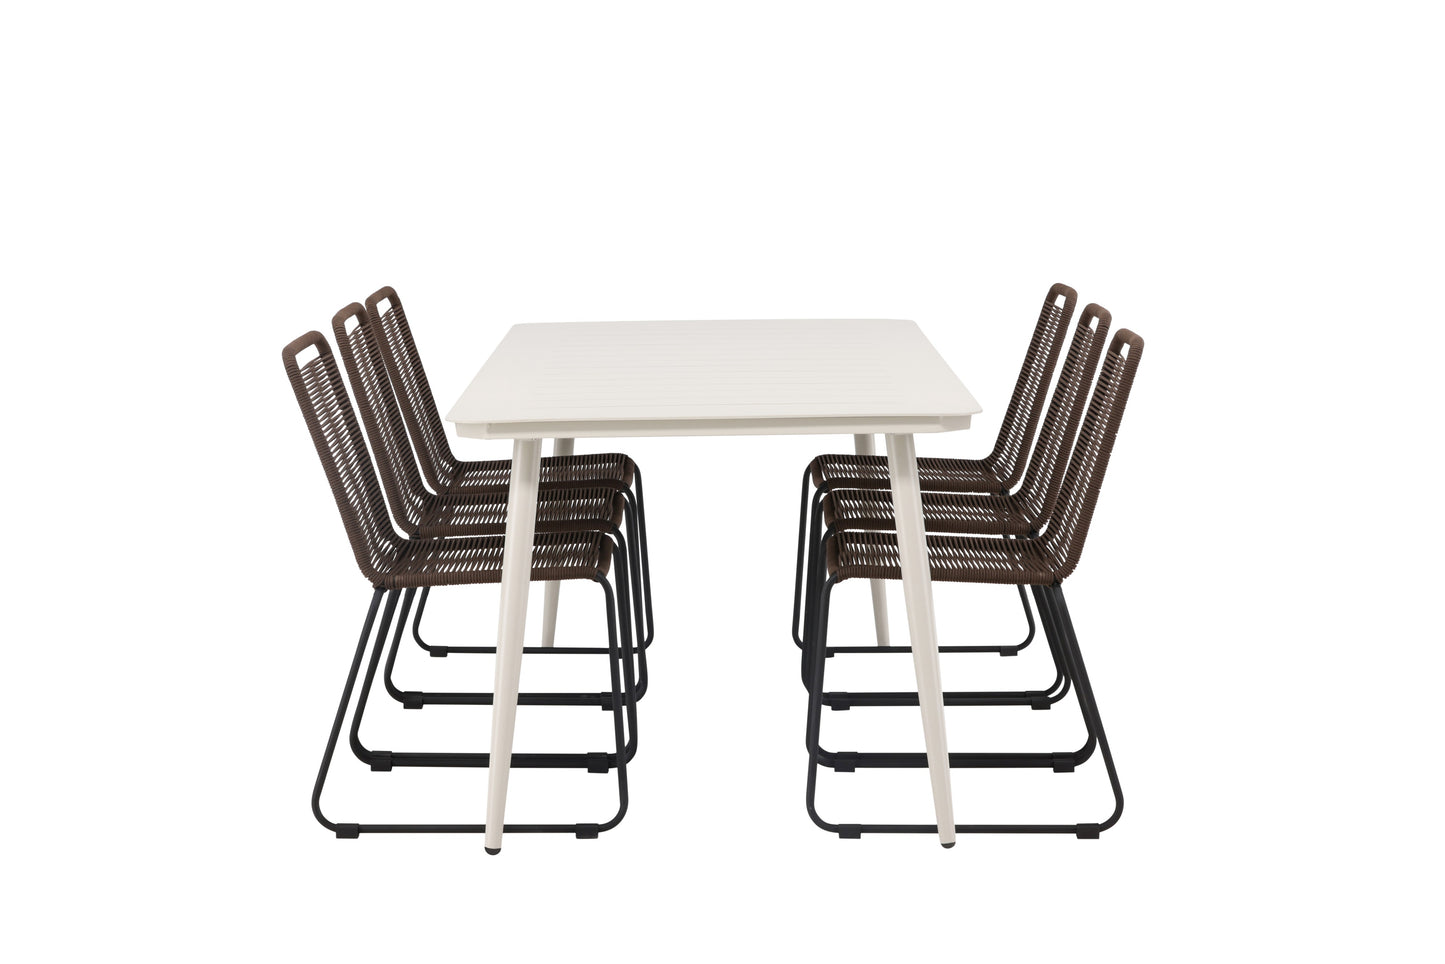 Lia - Spisebord, Beige - 200*90 + Lidos stol Aluminium - Sort